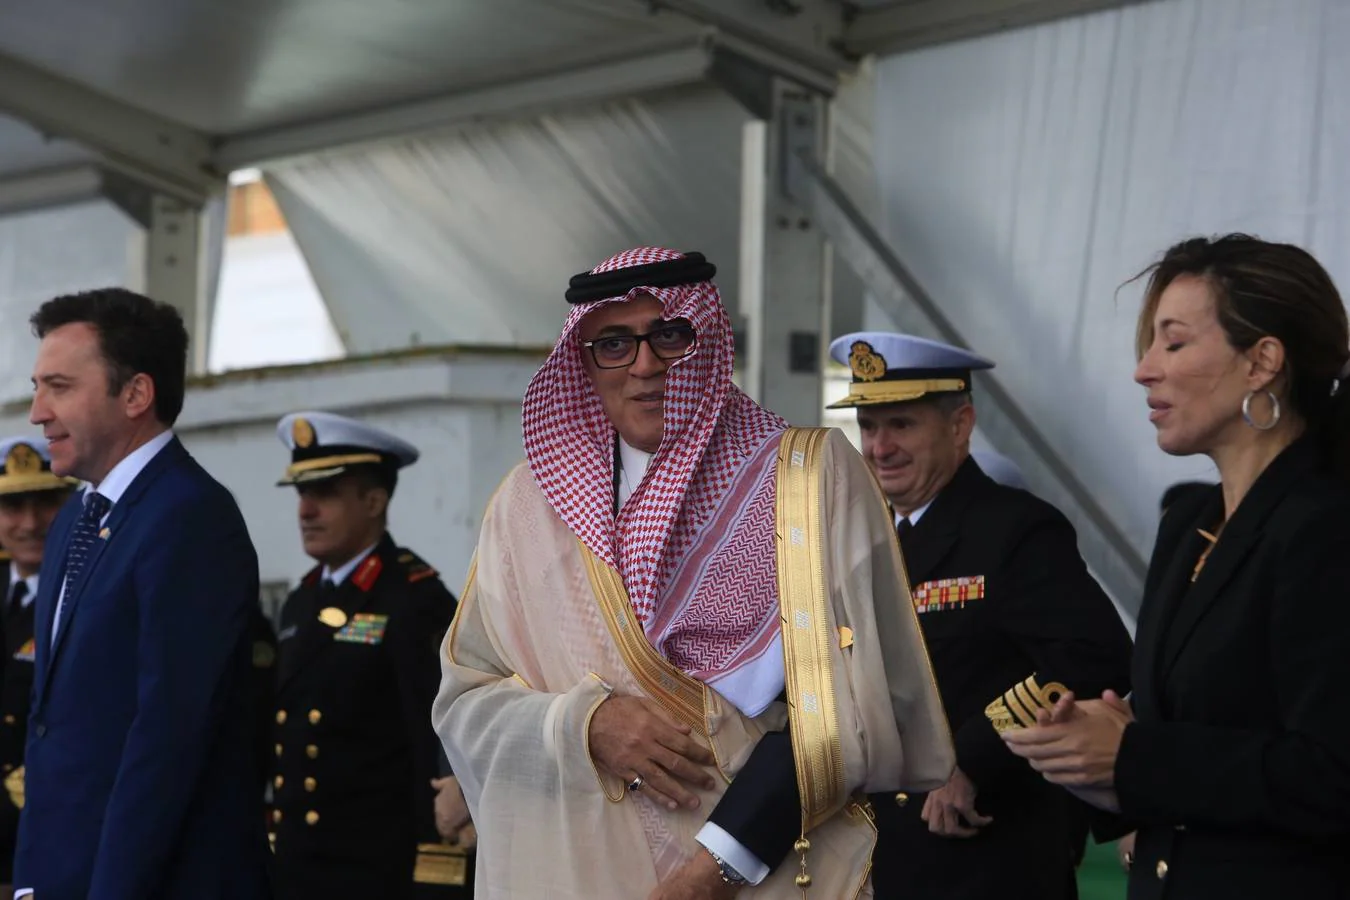 FOTOS: Así ha sido la entrega de la primera corbeta saudí en Navantia